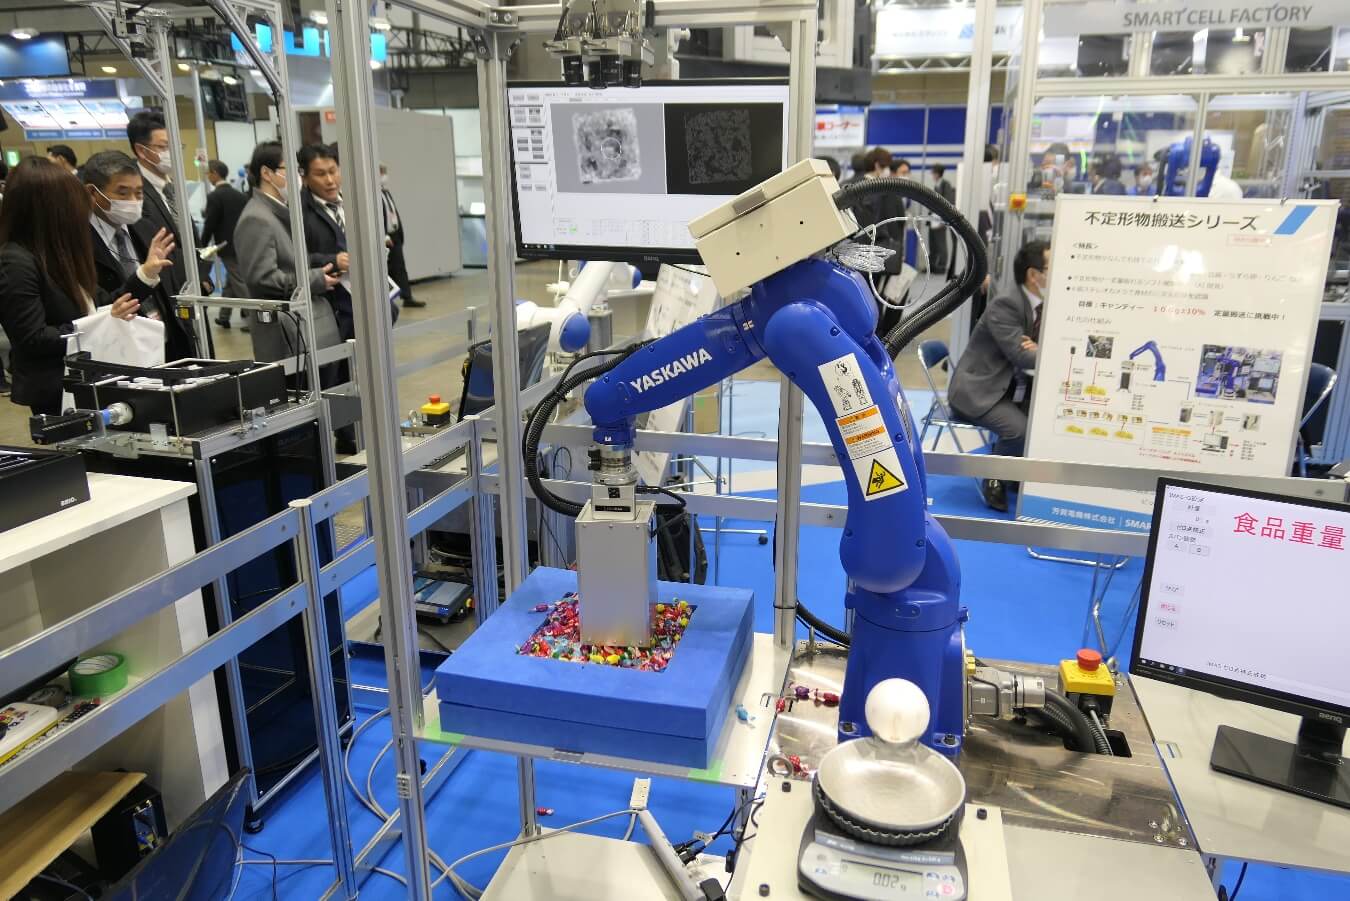 迎接2020年奥运，服务机器人展示新技术